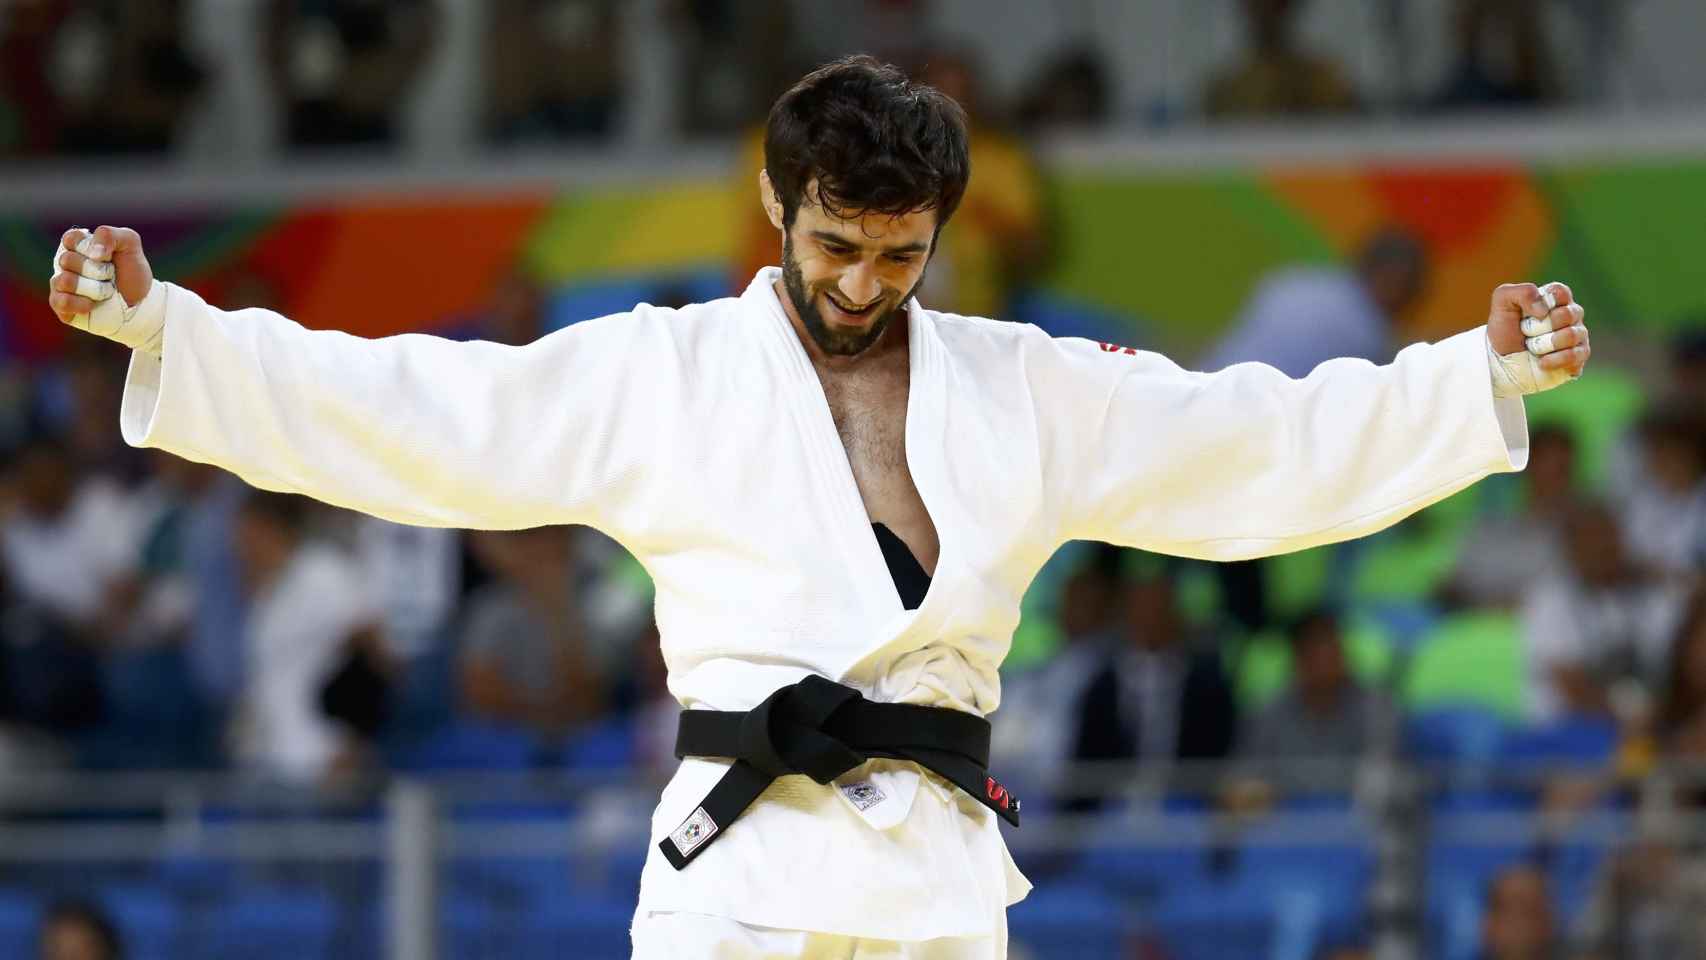 Beslan Mudranov tras ganar el oro.